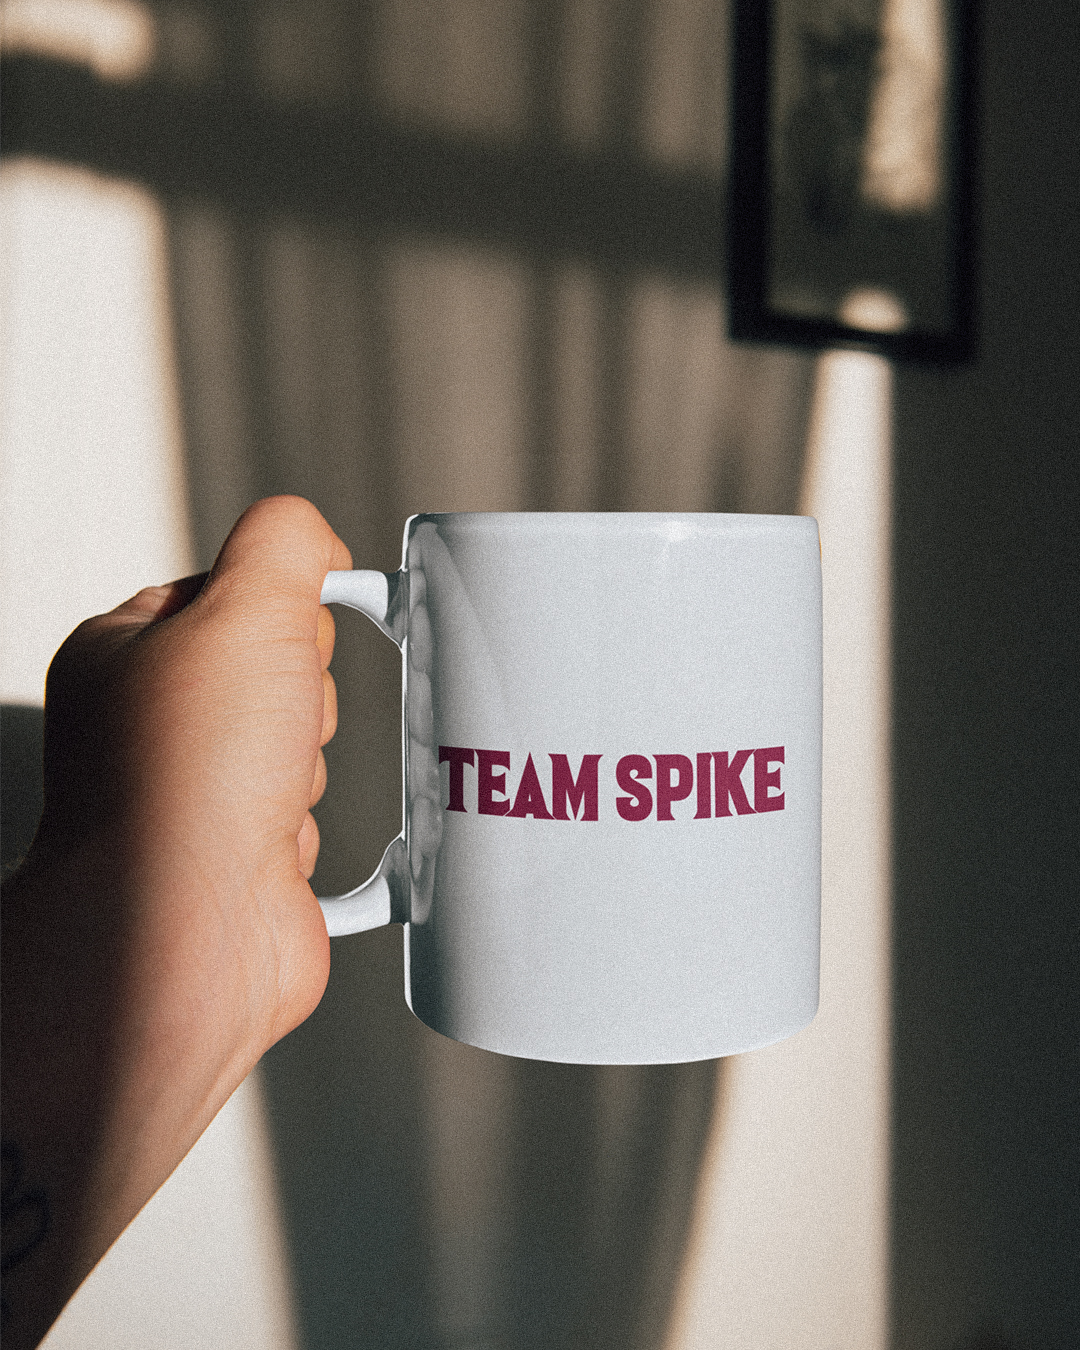 Team Spike Buffy The Vampire Slayer Inspired Mug - Team Spike Mug - Buffy The Vampire Slayer Inspired Mug - Buffy Spike Mug